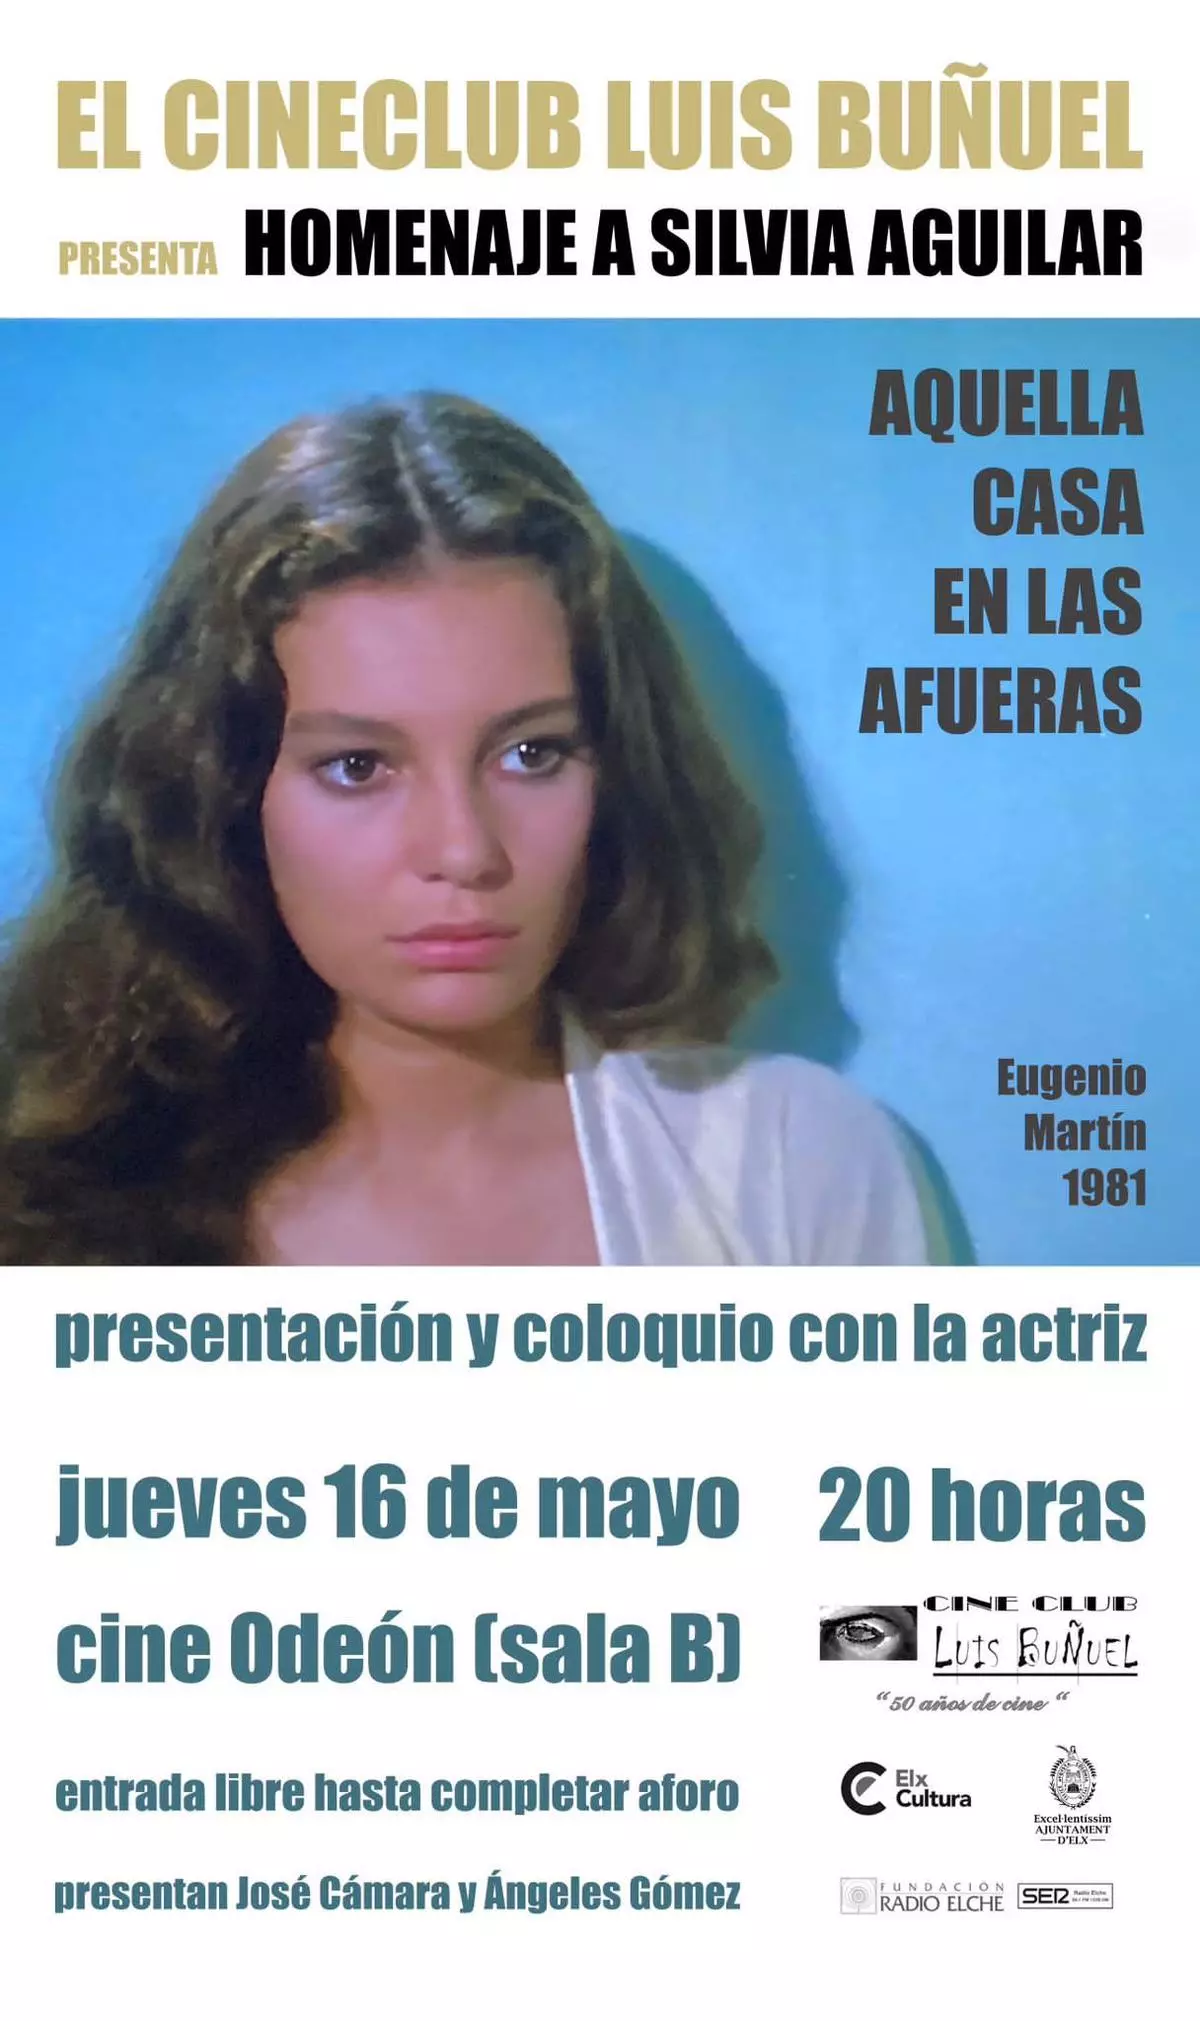 Elche homenajea por primera vez a la actriz ilicitana Silvia Aguilar en el cineclub Luis Buñuel